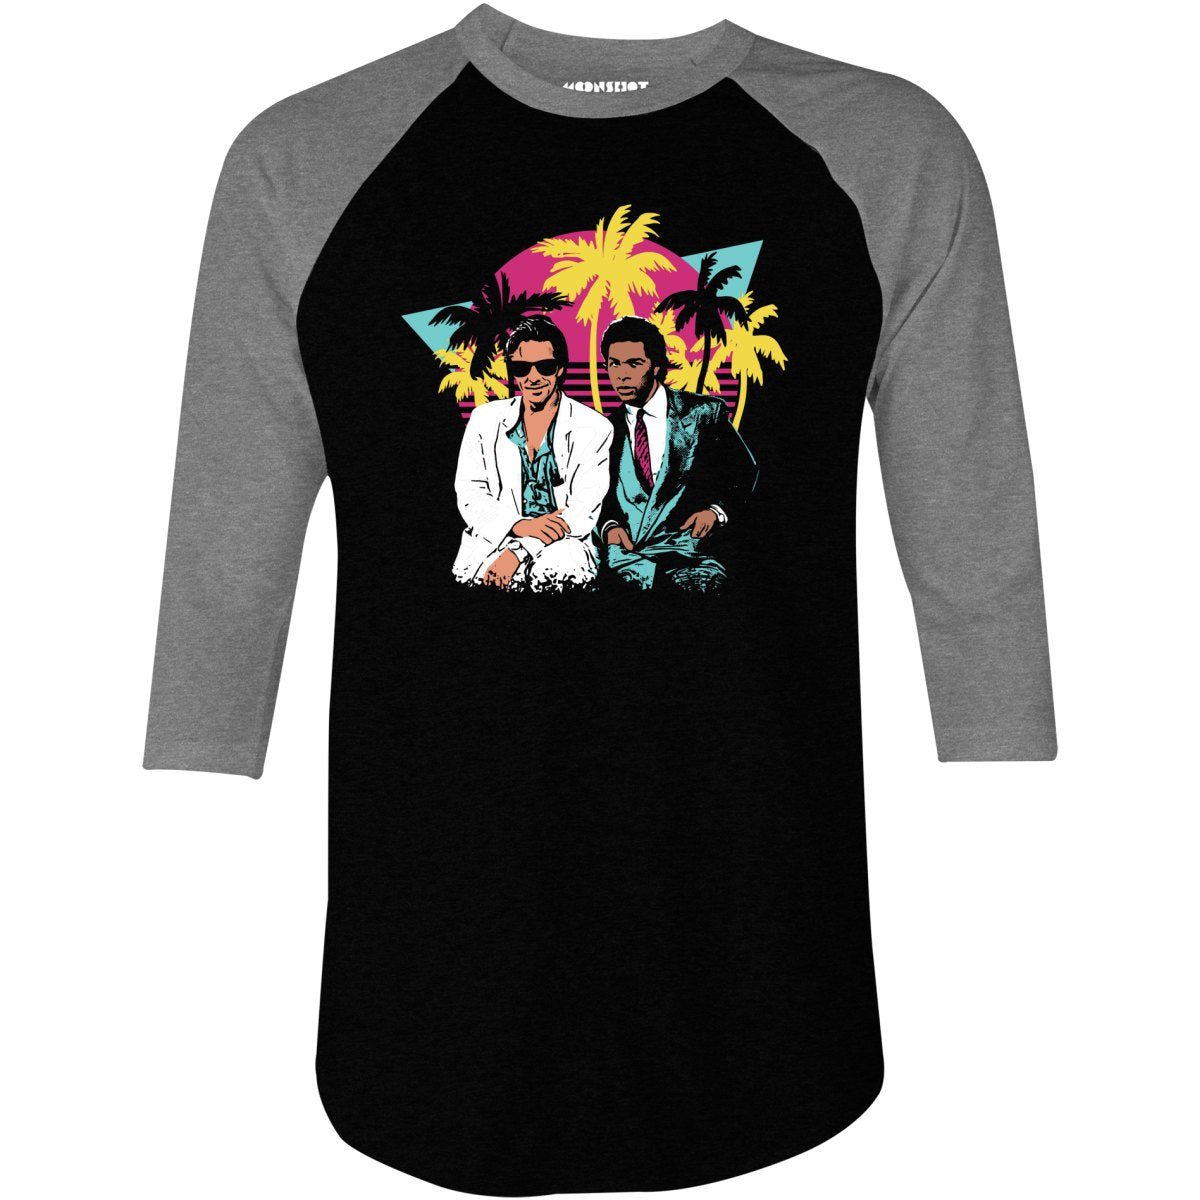 Crockett and Tubbs - 3/4 Sleeve Raglan T-Shirt